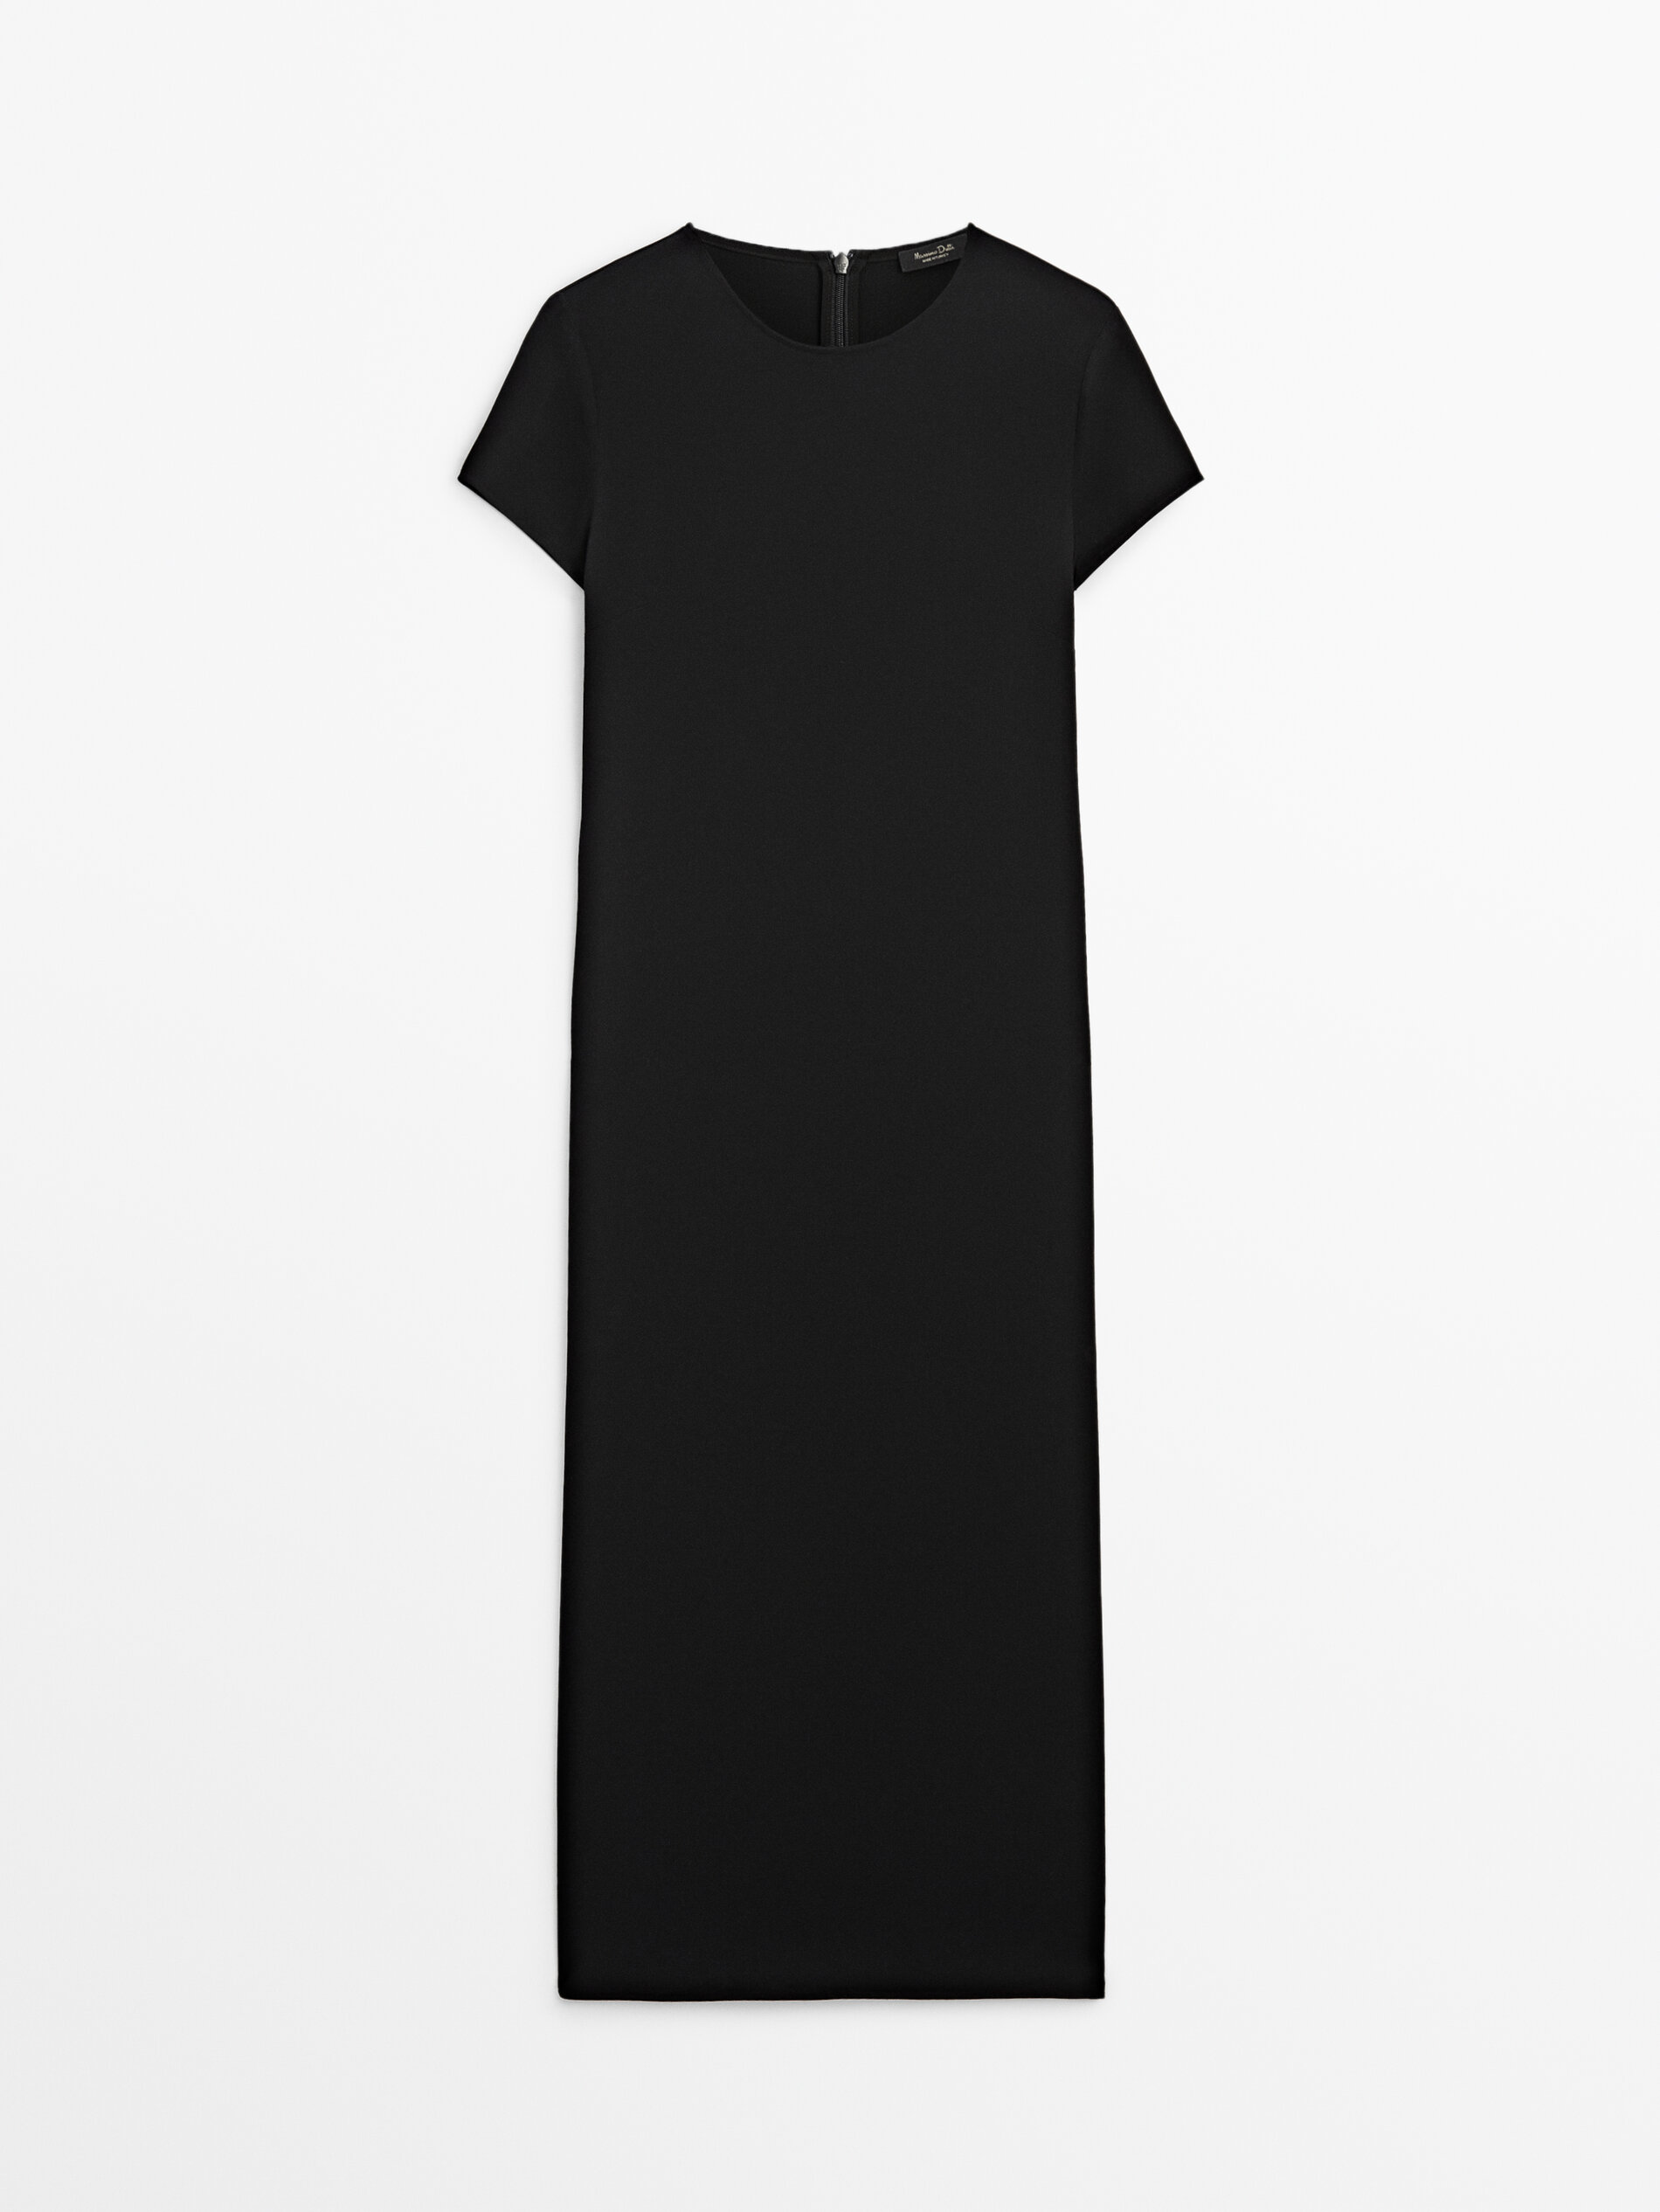 Платье Massimo Dutti Short Sleeve Black, черный платье черное с рукавами клеш 44 размер